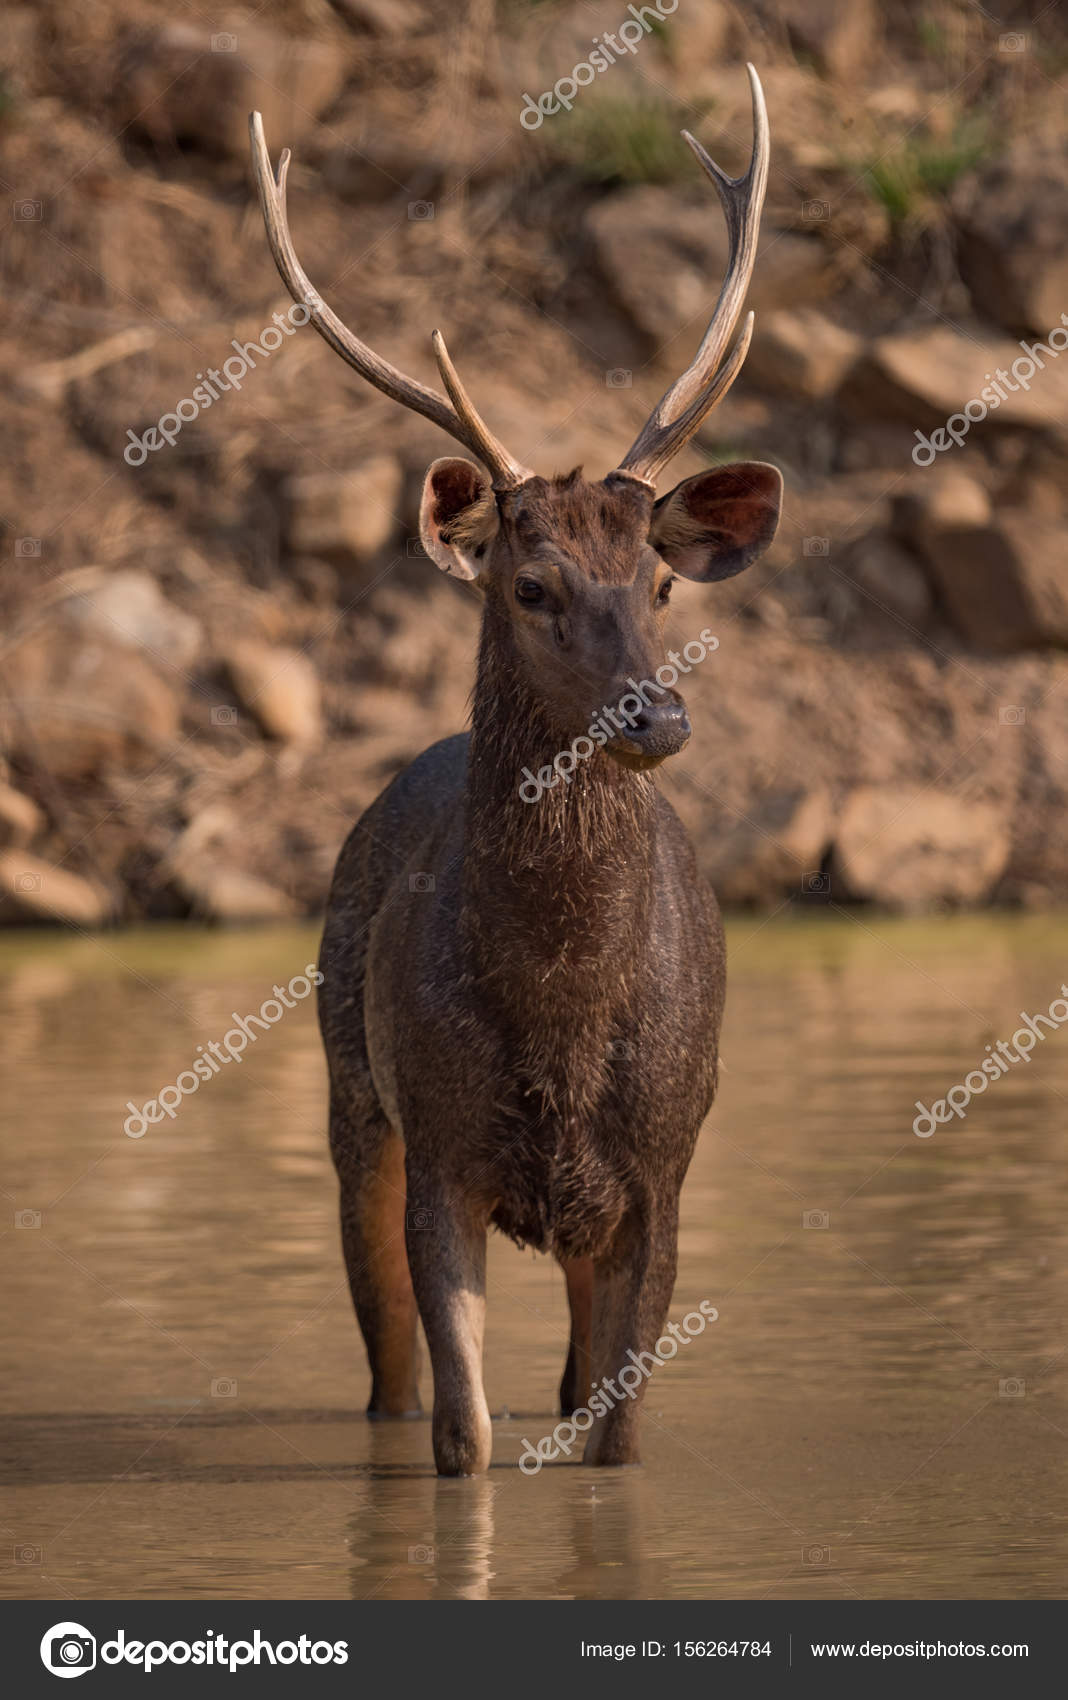 Sambar deer Stock Photos, Royalty Free Sambar deer Images | Depositphotos